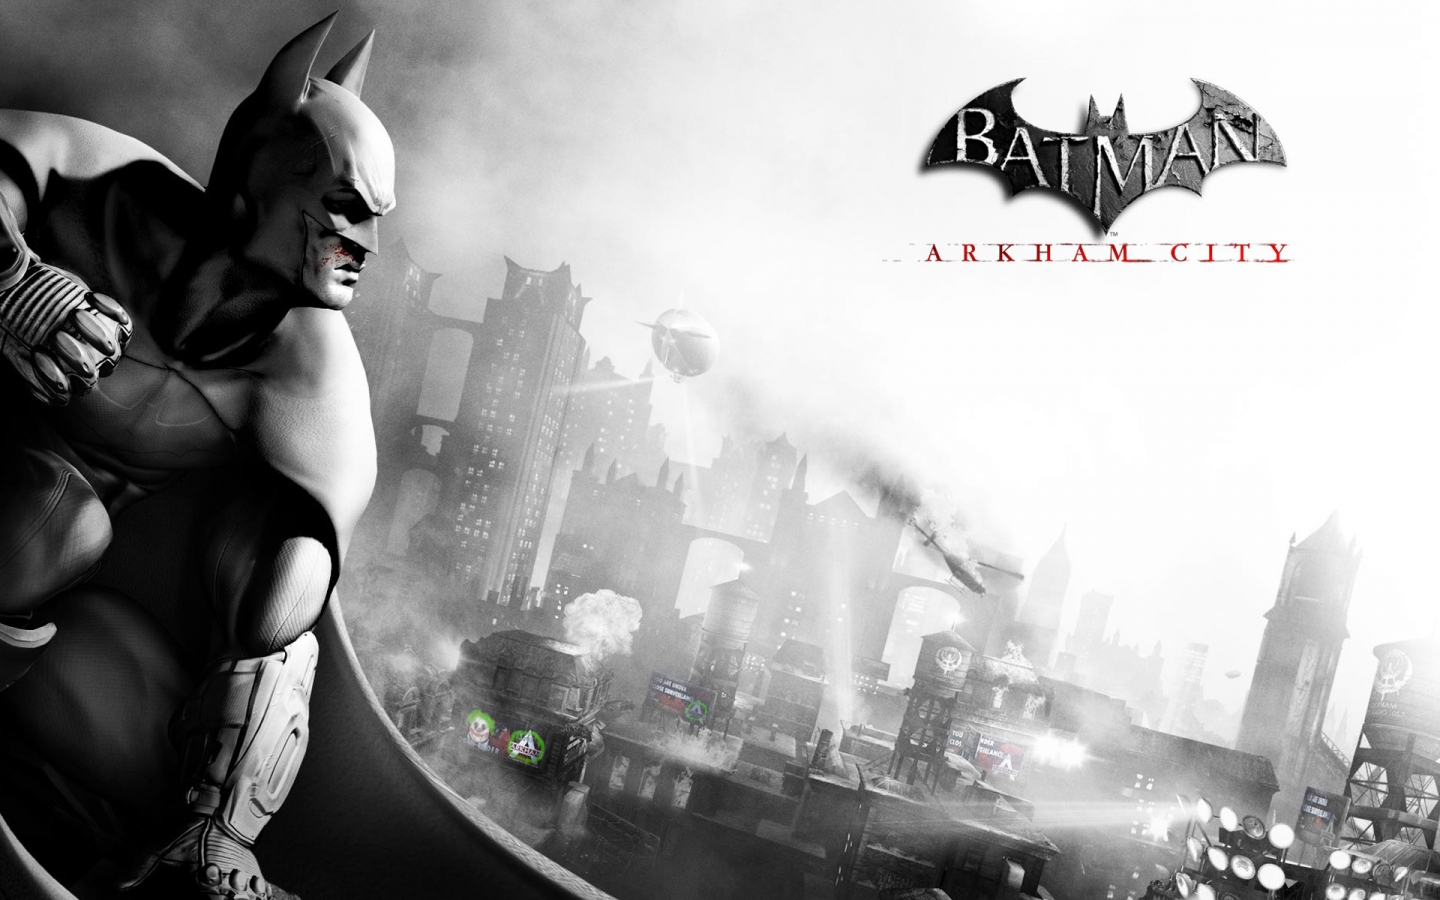 Batman Arkham City for 1440 x 900 widescreen resolution